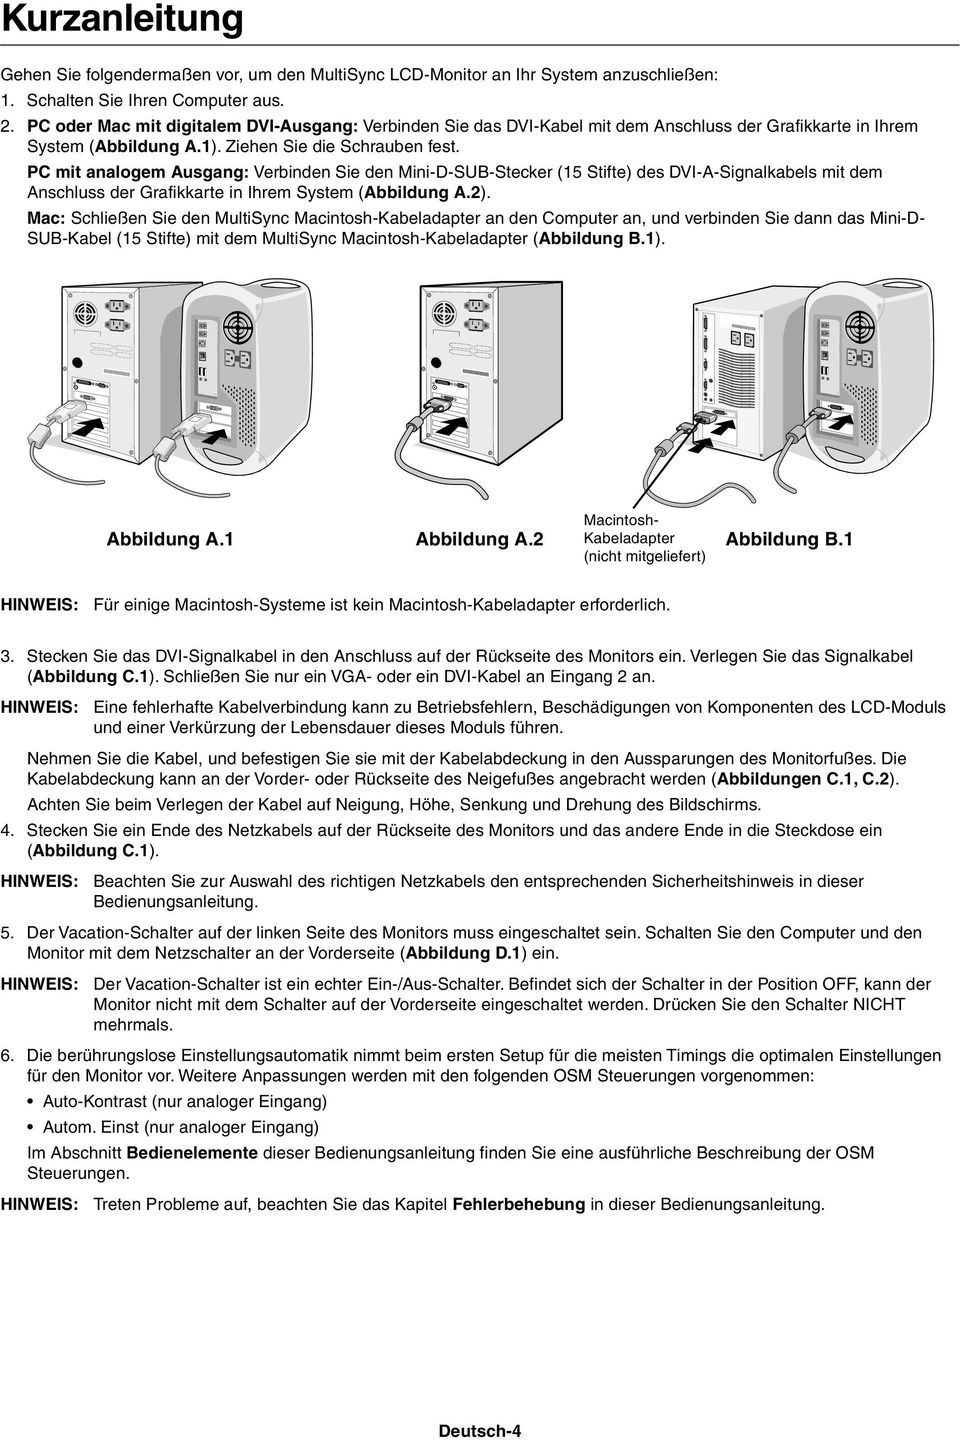 PC mit analogem Ausgang: Verbinden Sie den Mini-D-SUB-Stecker (15 Stifte) des DVI-A-Signalkabels mit dem Anschluss der Grafikkarte in Ihrem System (Abbildung A.2).